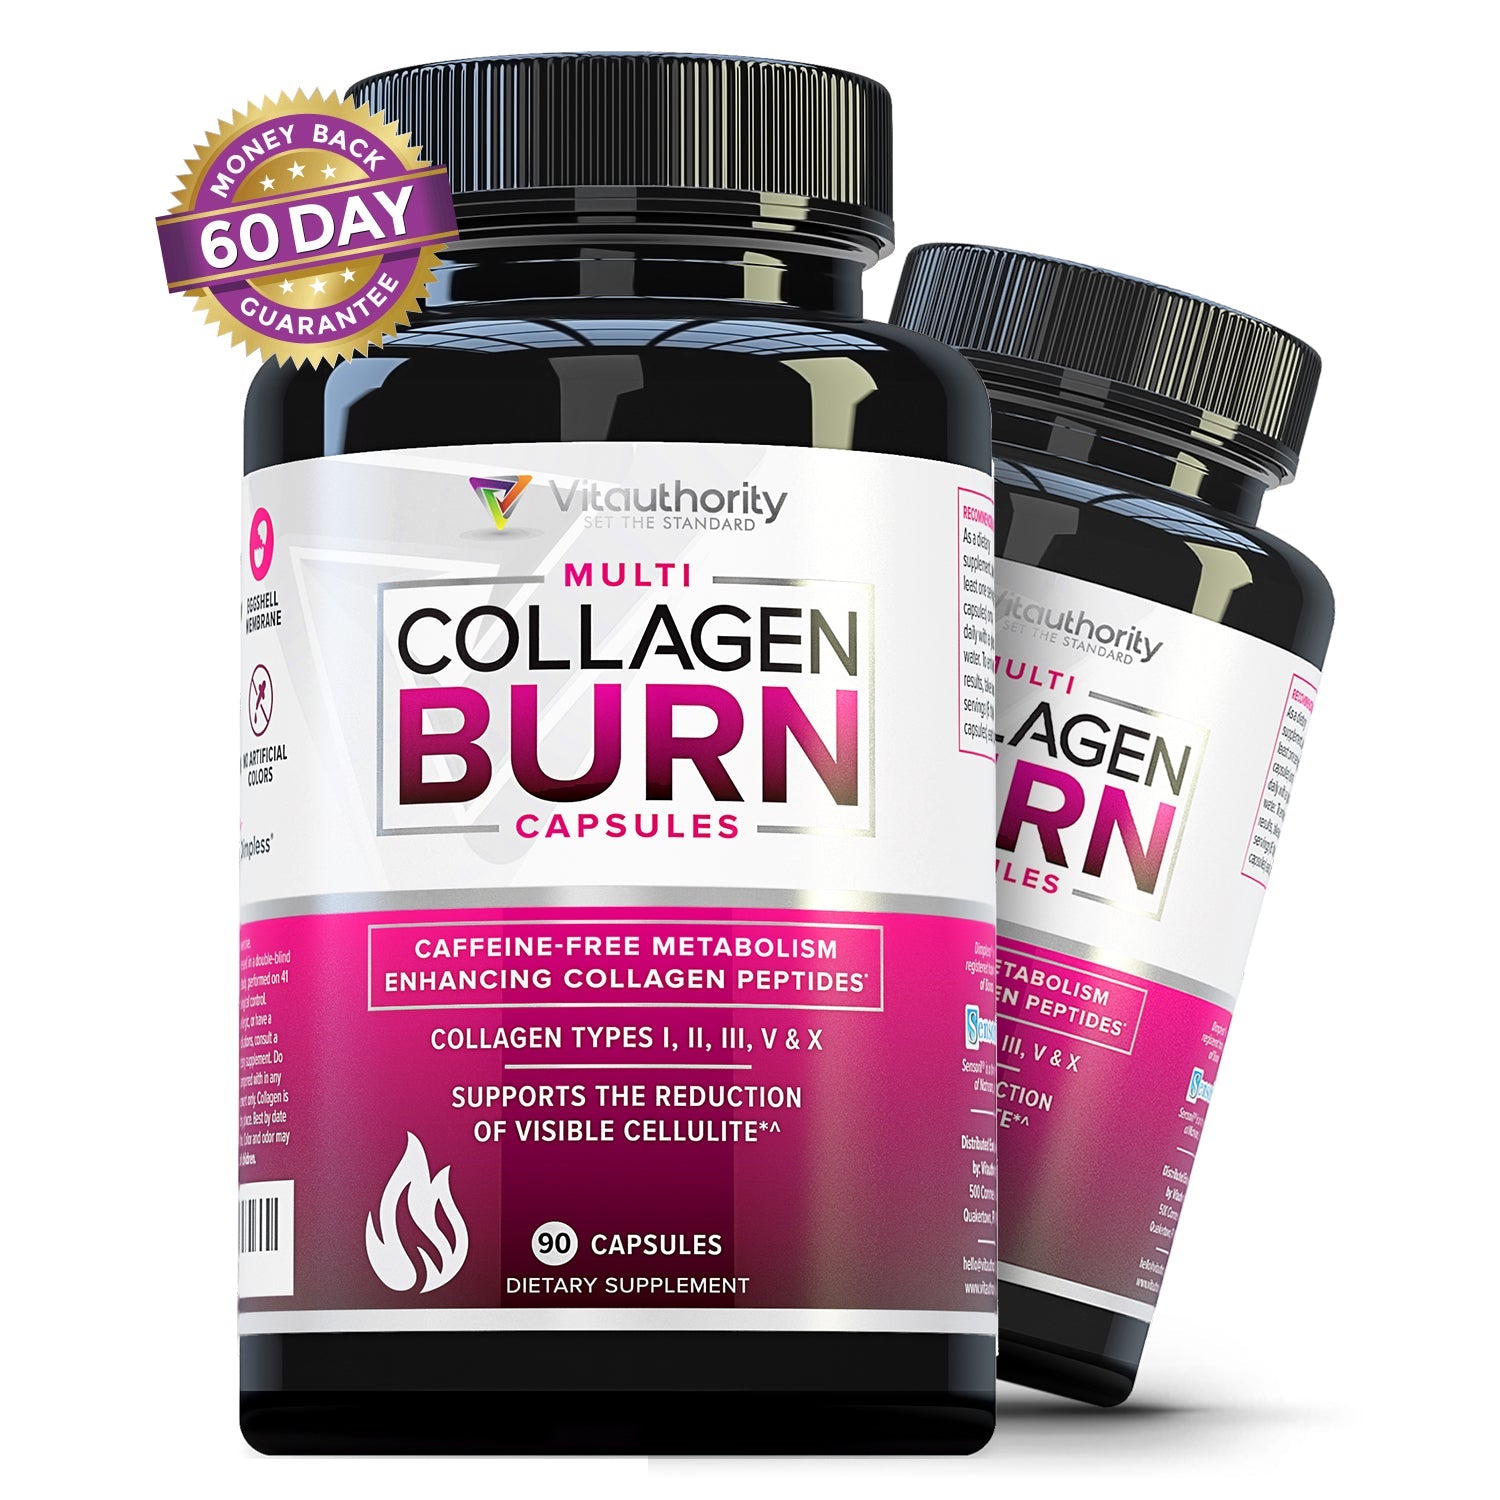 2 Bottles of Multi Collagen Burn Capsules